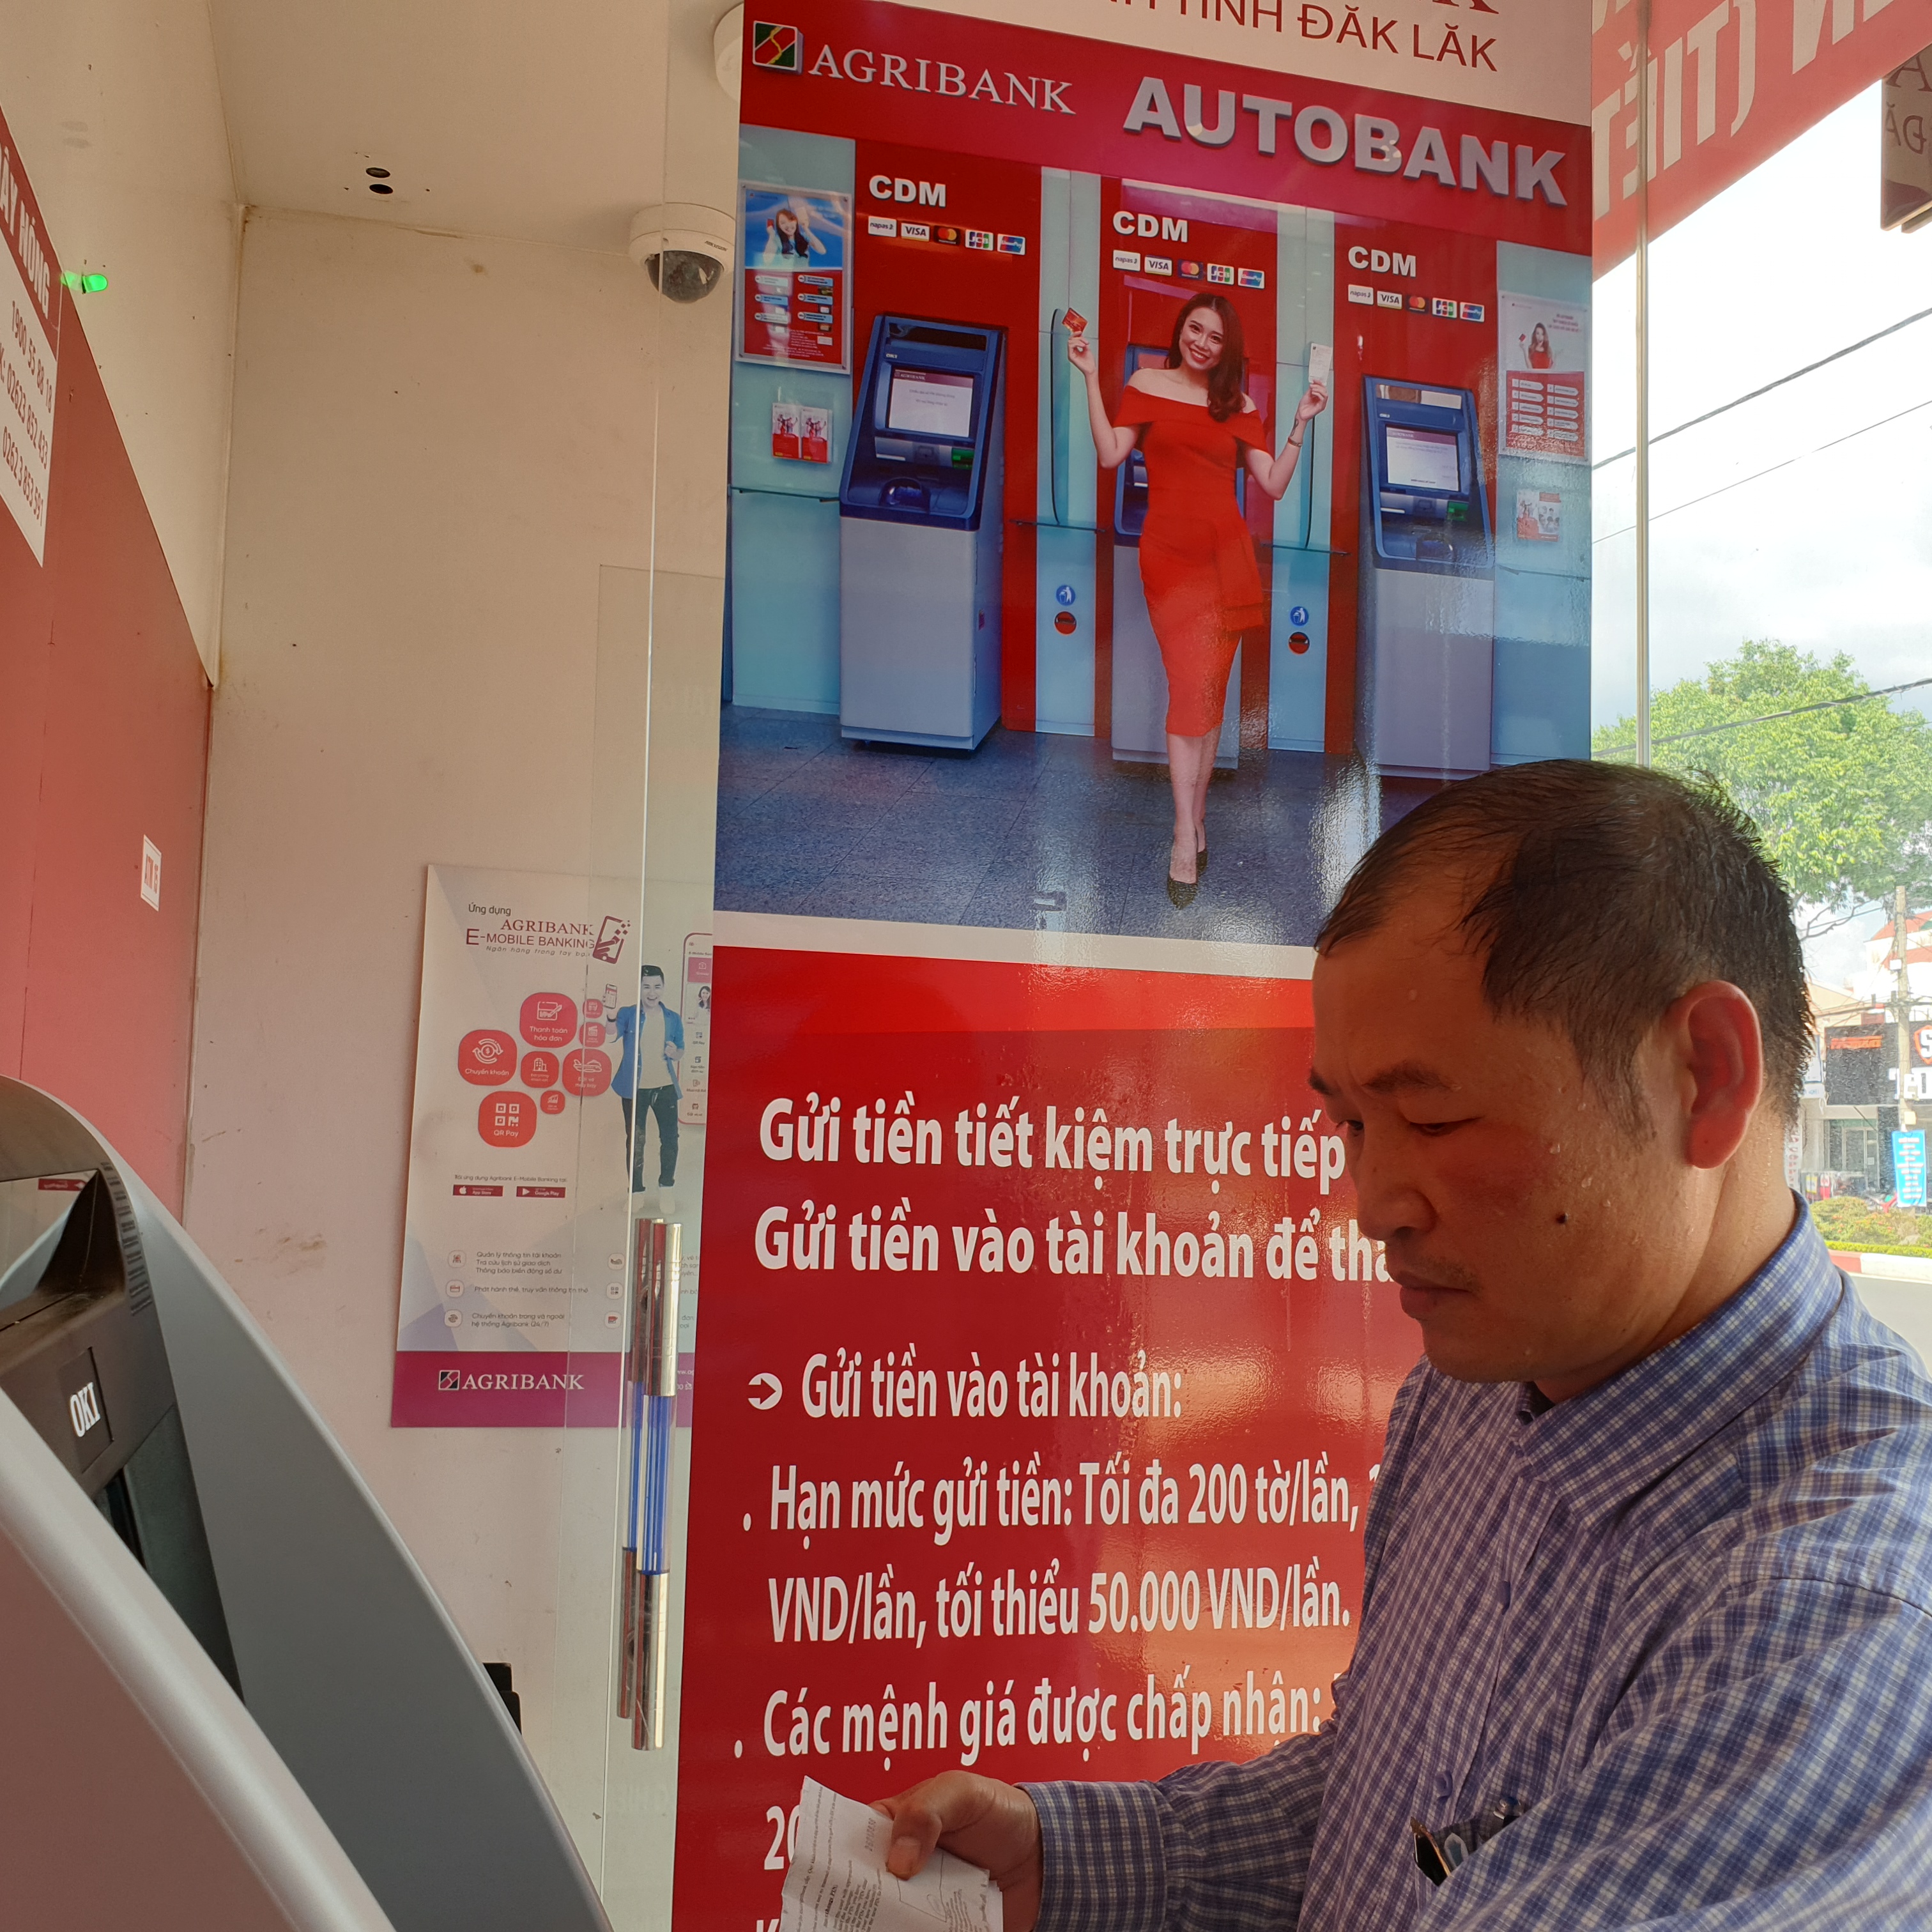 Agribank Đắk Lắk trang bị thêm CDM phục vụ khách hàng